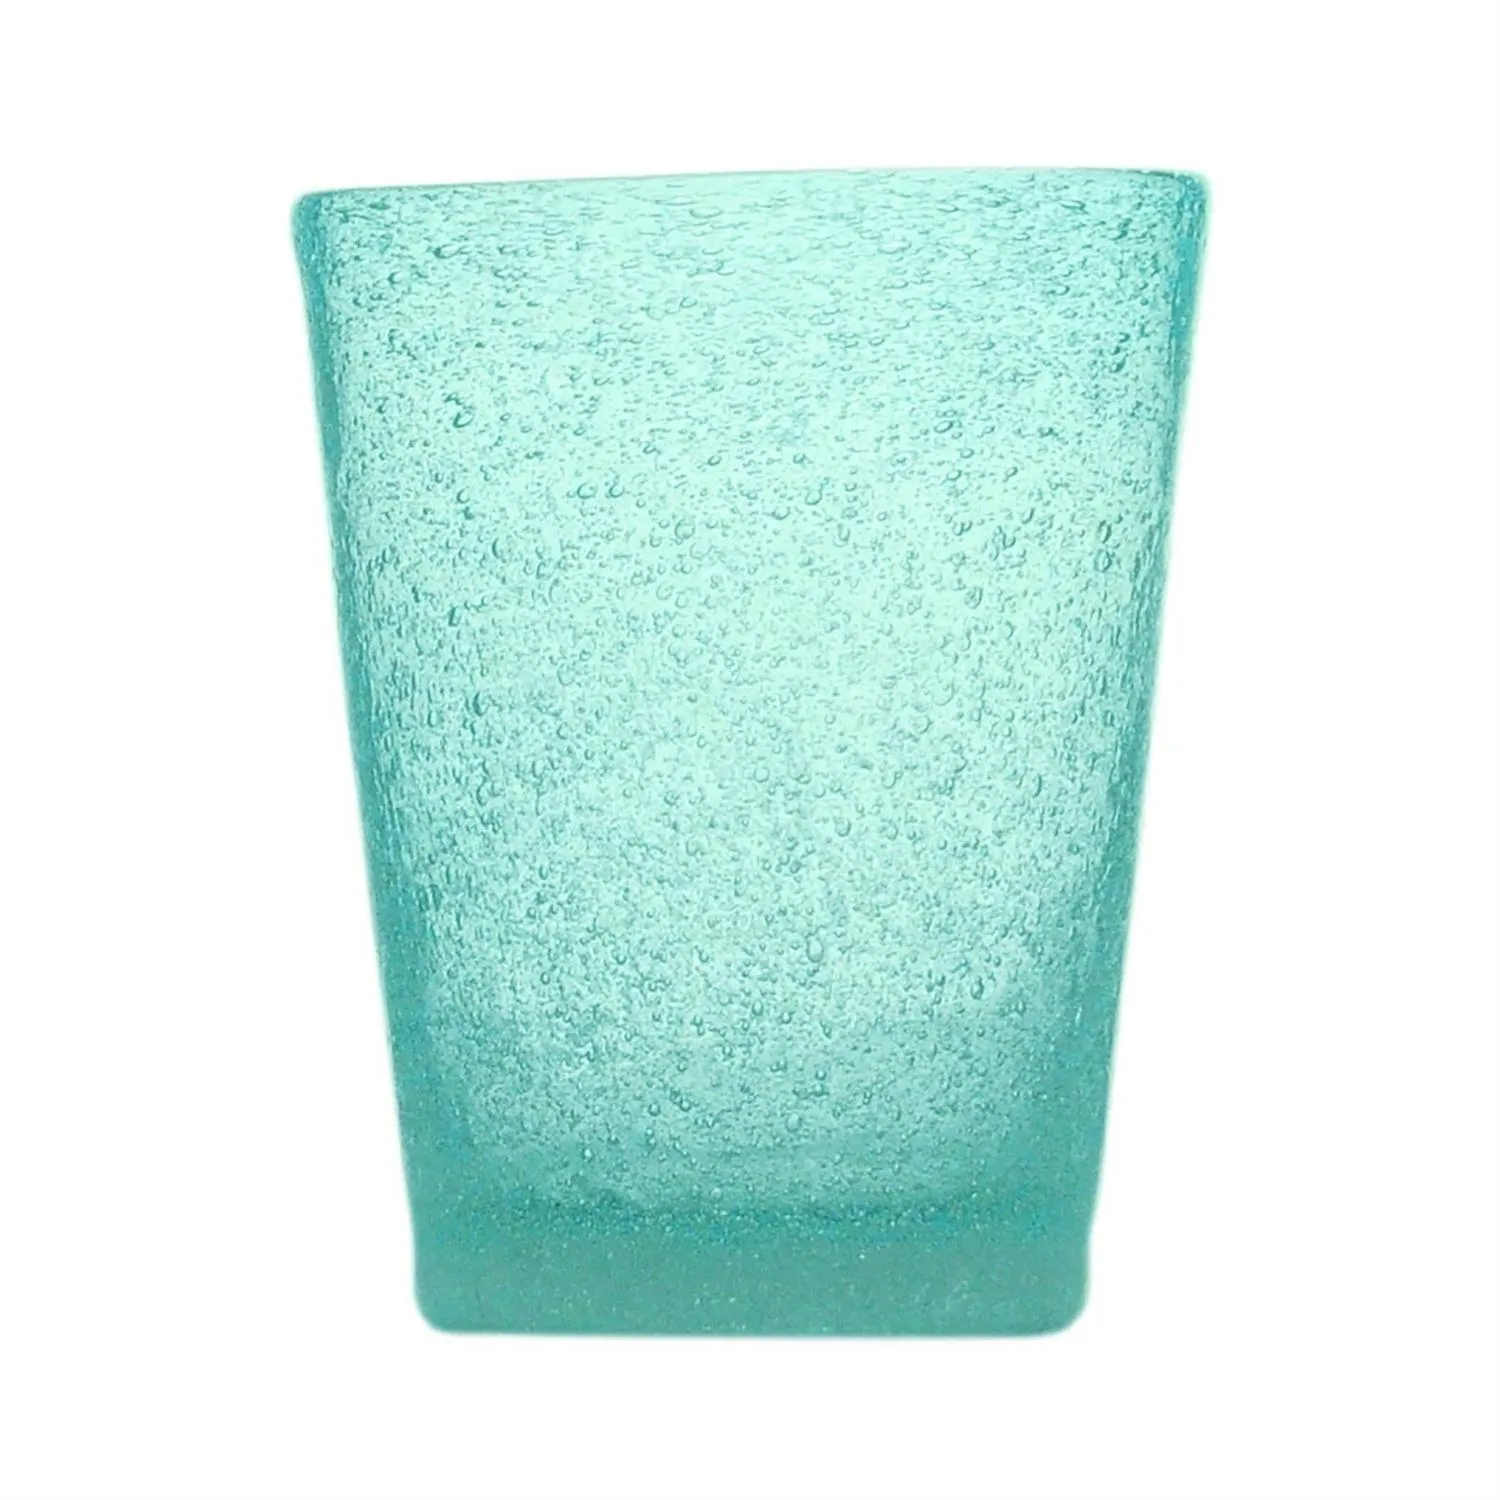 Bicchiere acqua Memento Glass in vetro, Turchese, 6 pezzi